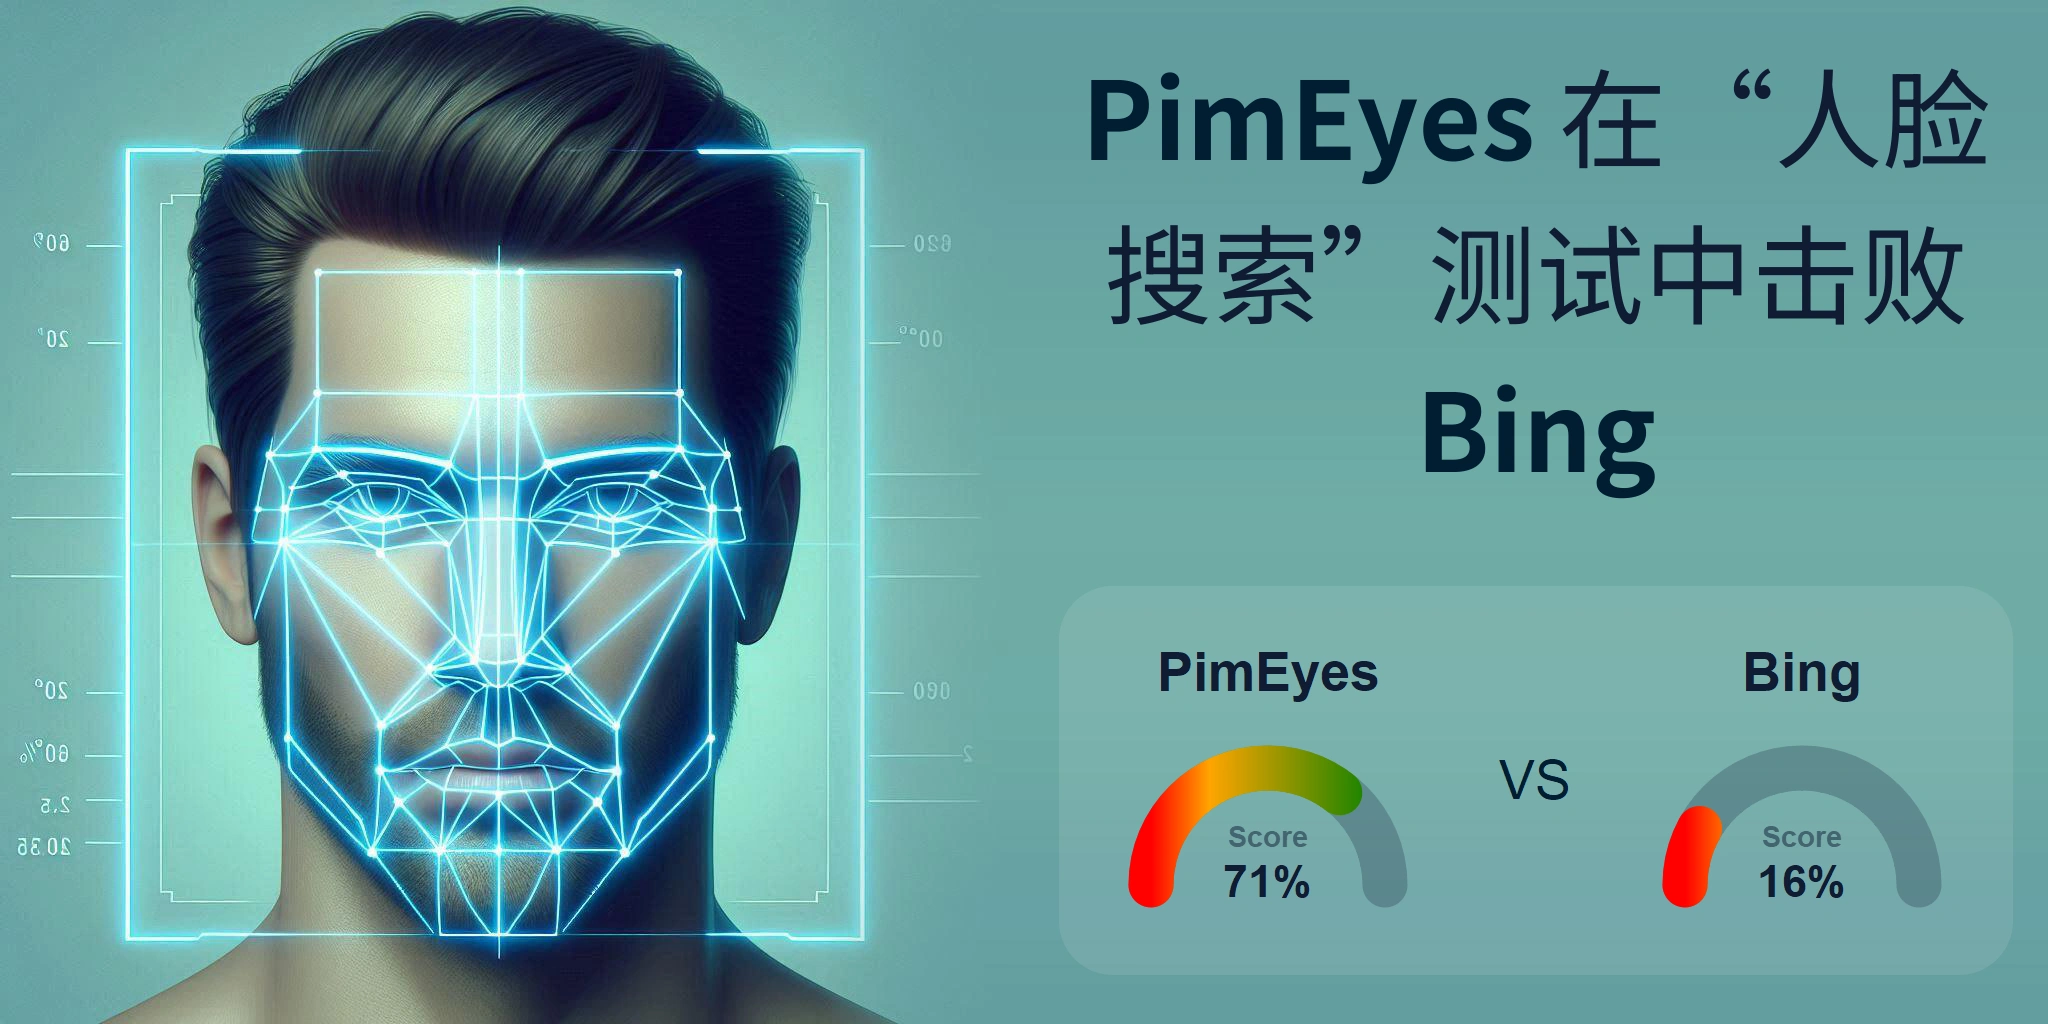 哪一个更适合人脸搜索：<br>PimEyes 还是 Bing？